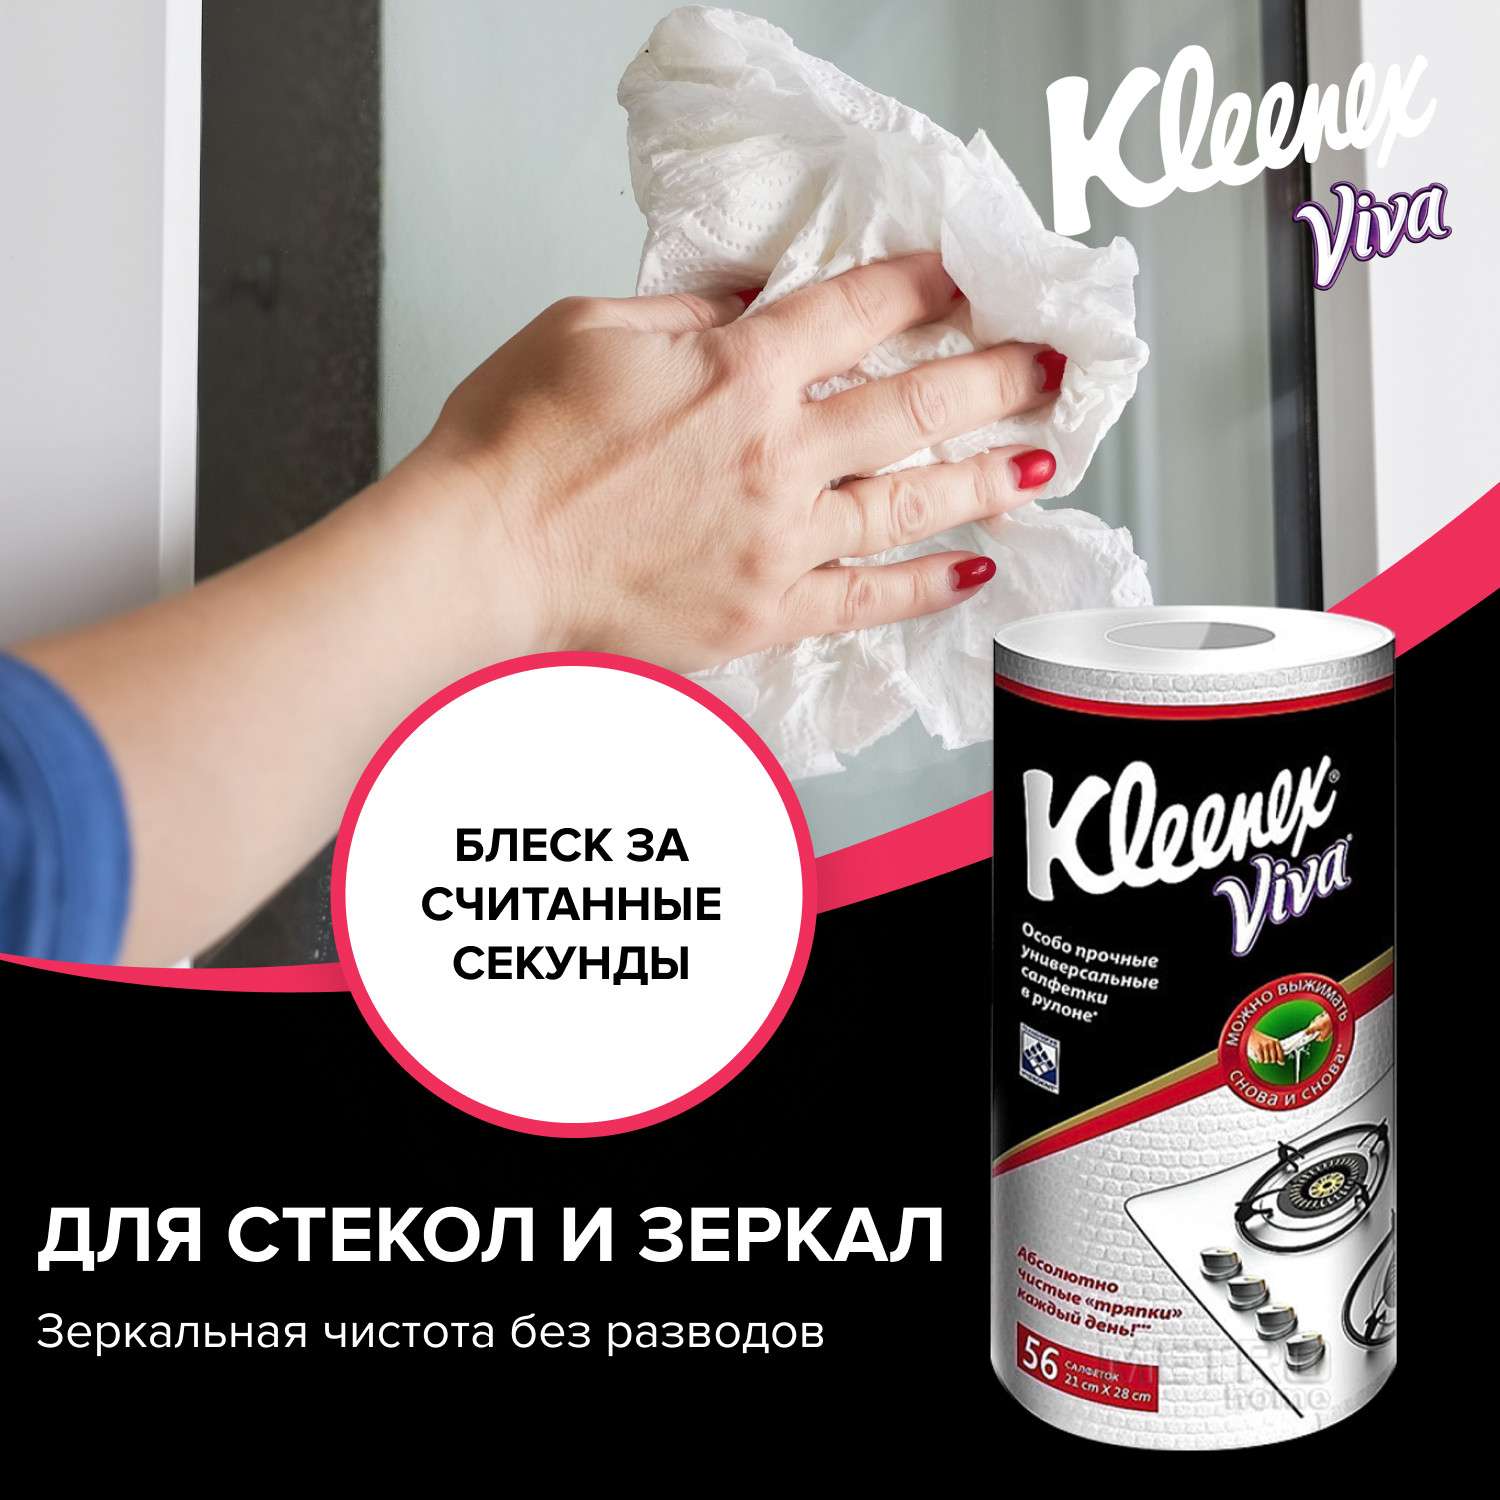 Тряпки Kleenex Viva универсальные в рулоне - фото 10